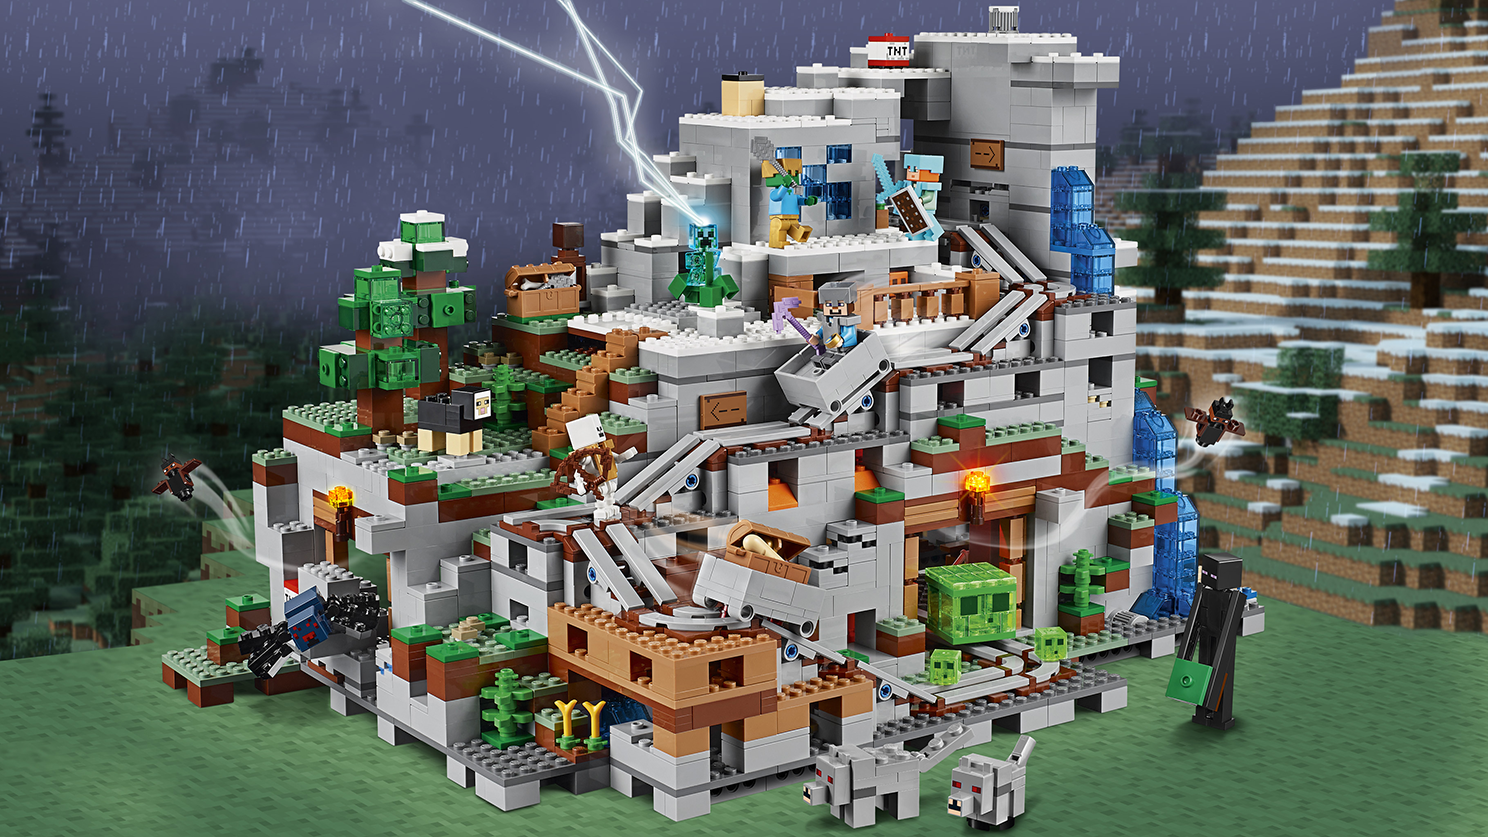 山の洞窟 21137 - レゴ®マインクラフト セット - LEGO.comキッズ